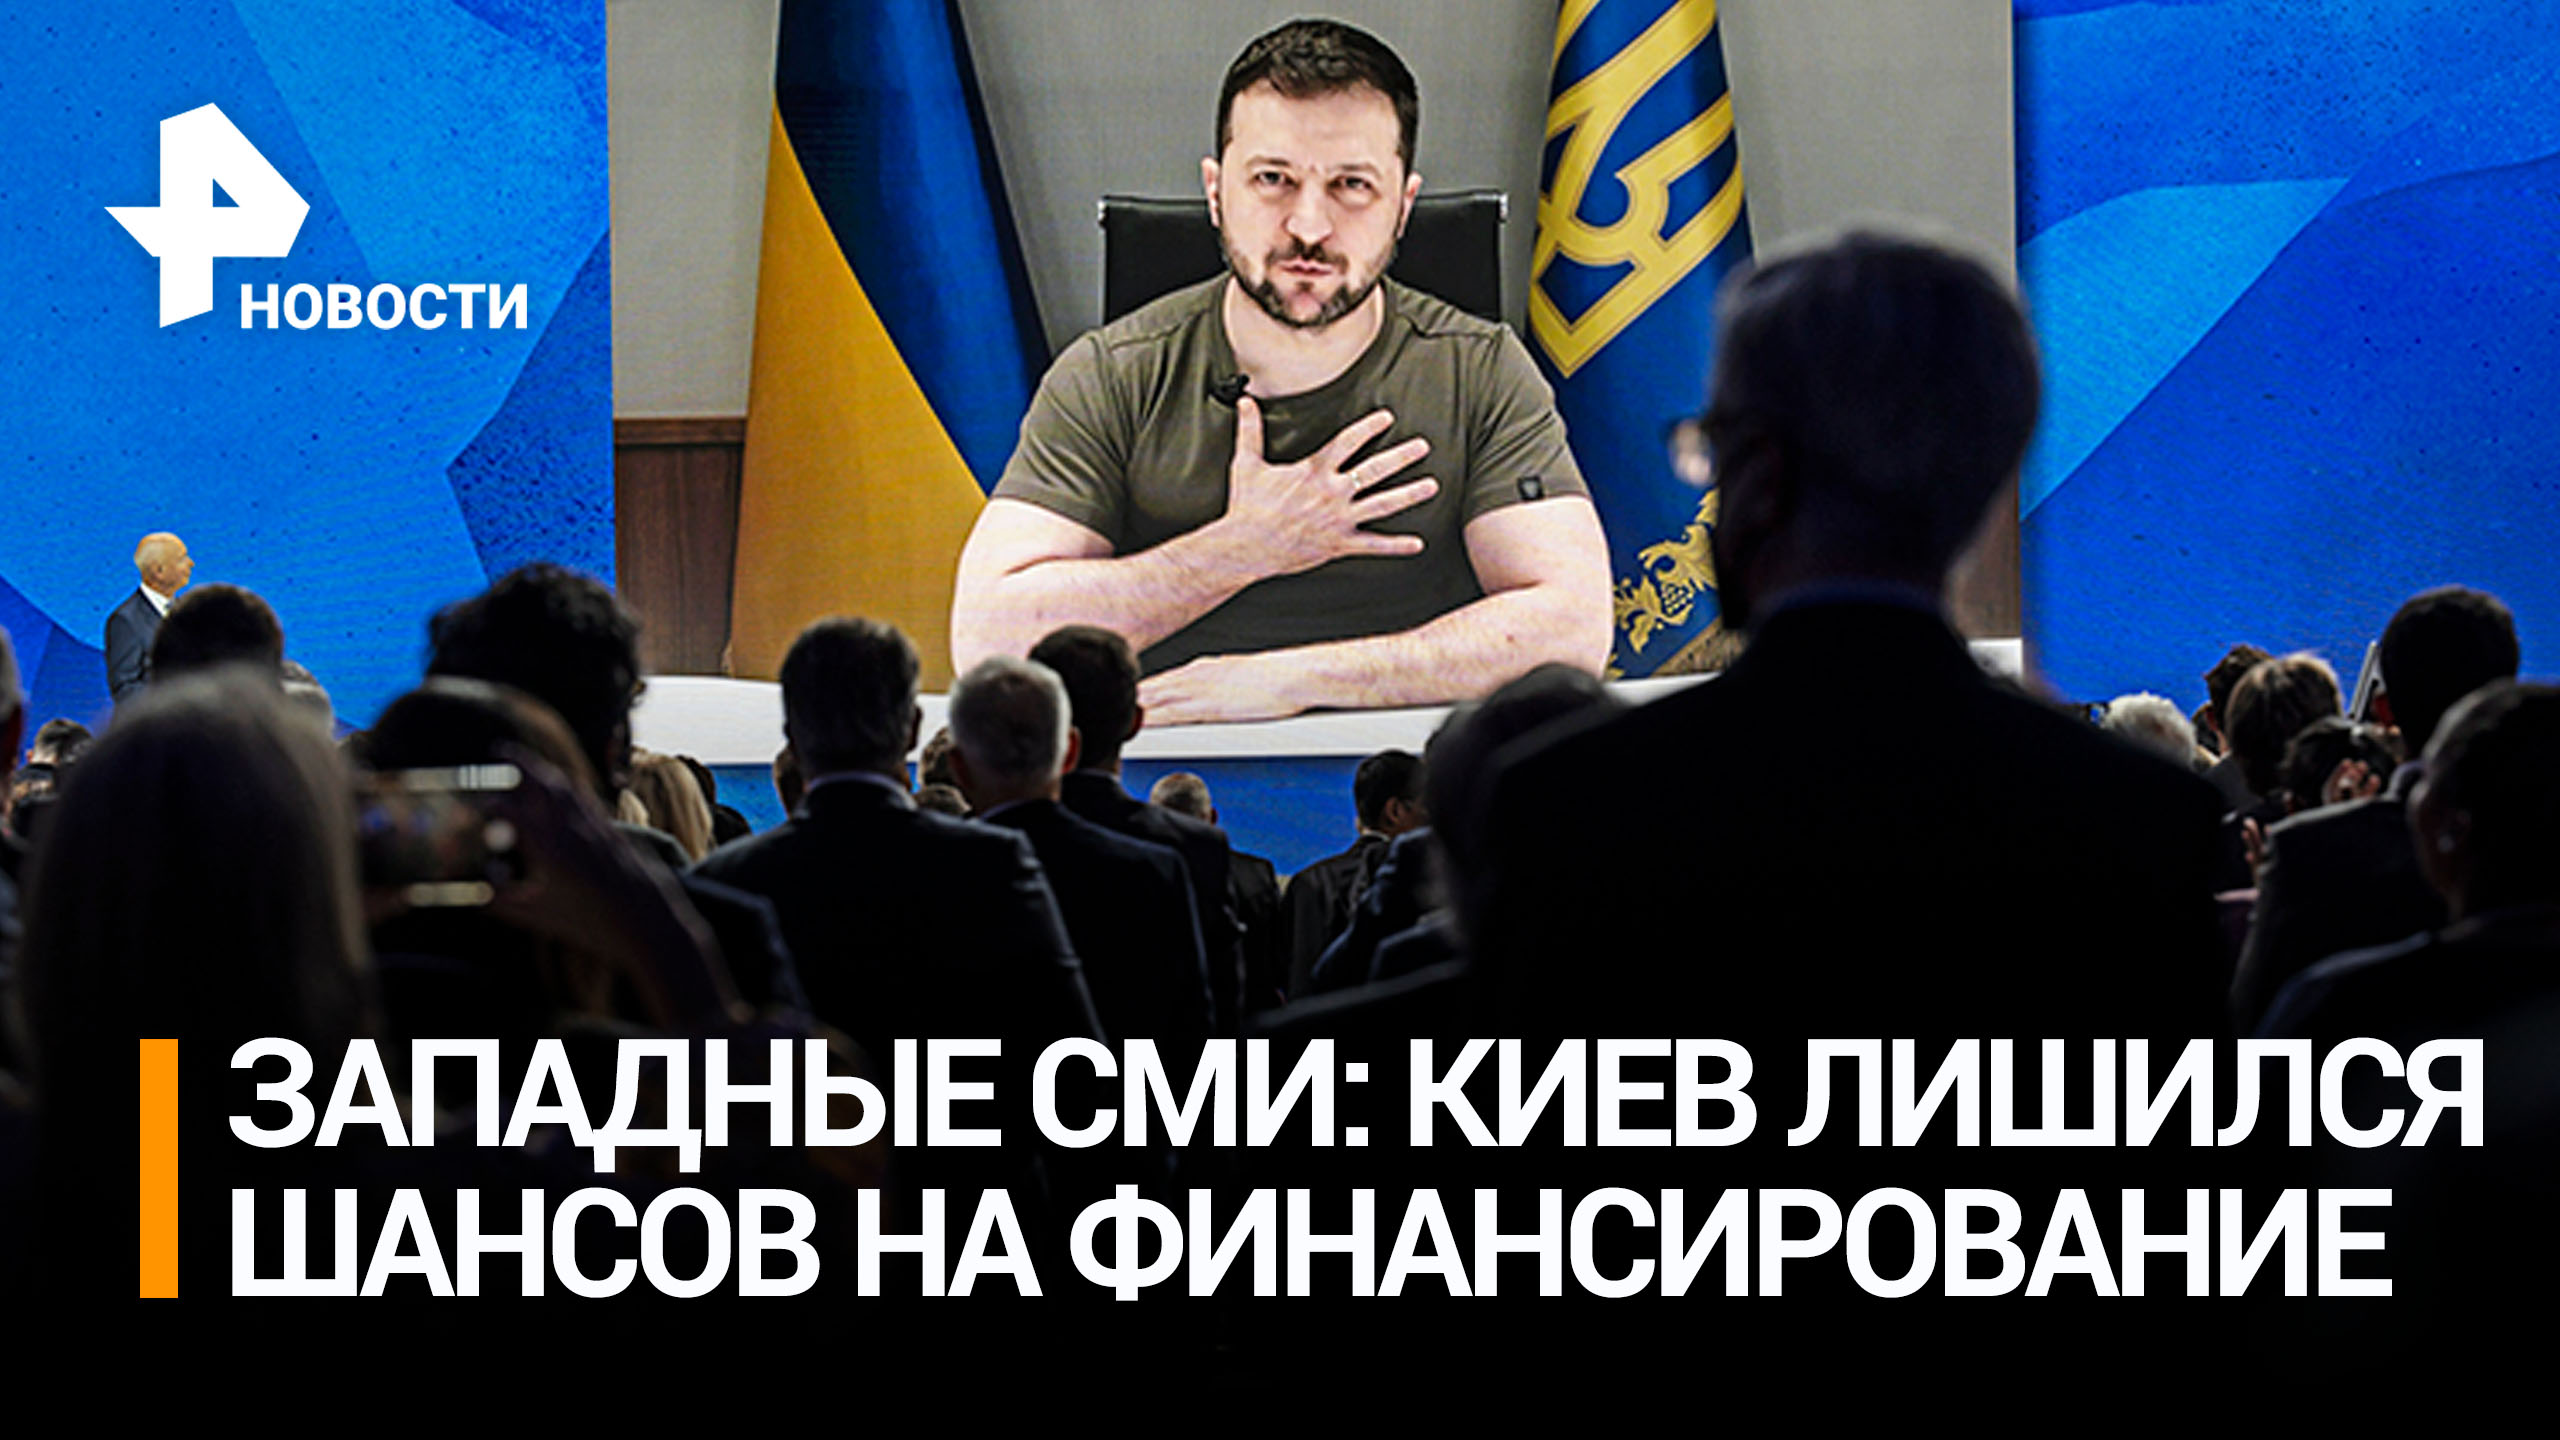 Киев лишился шансов на финансирование, отказавшись от переговоров - западные СМИ / РЕН Новости